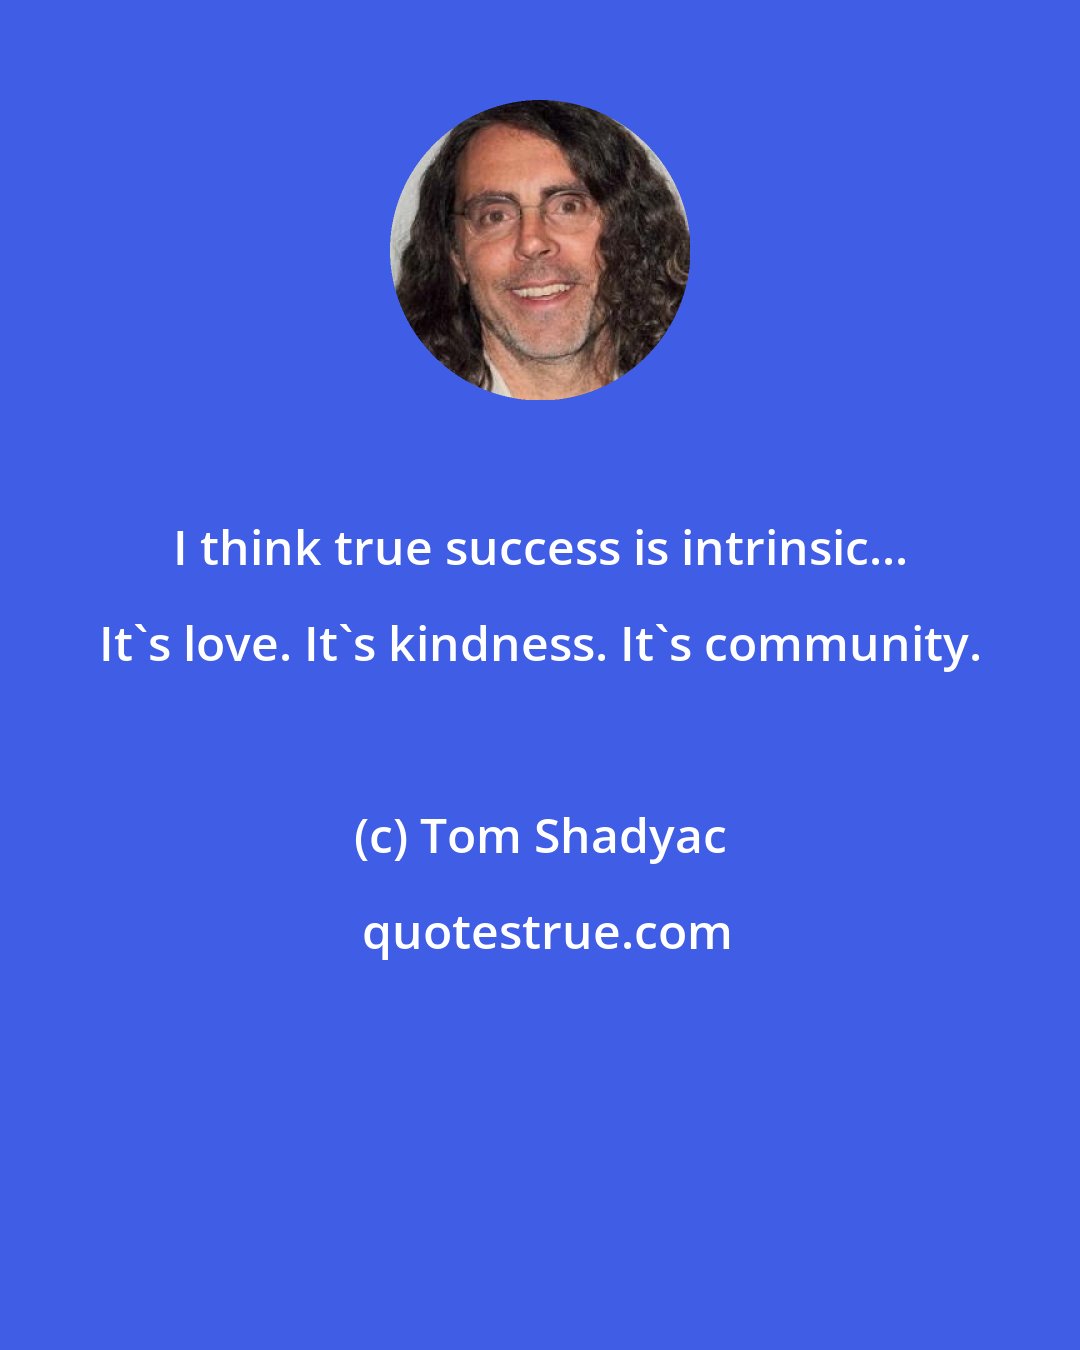 Tom Shadyac: I think true success is intrinsic... It's love. It's kindness. It's community.